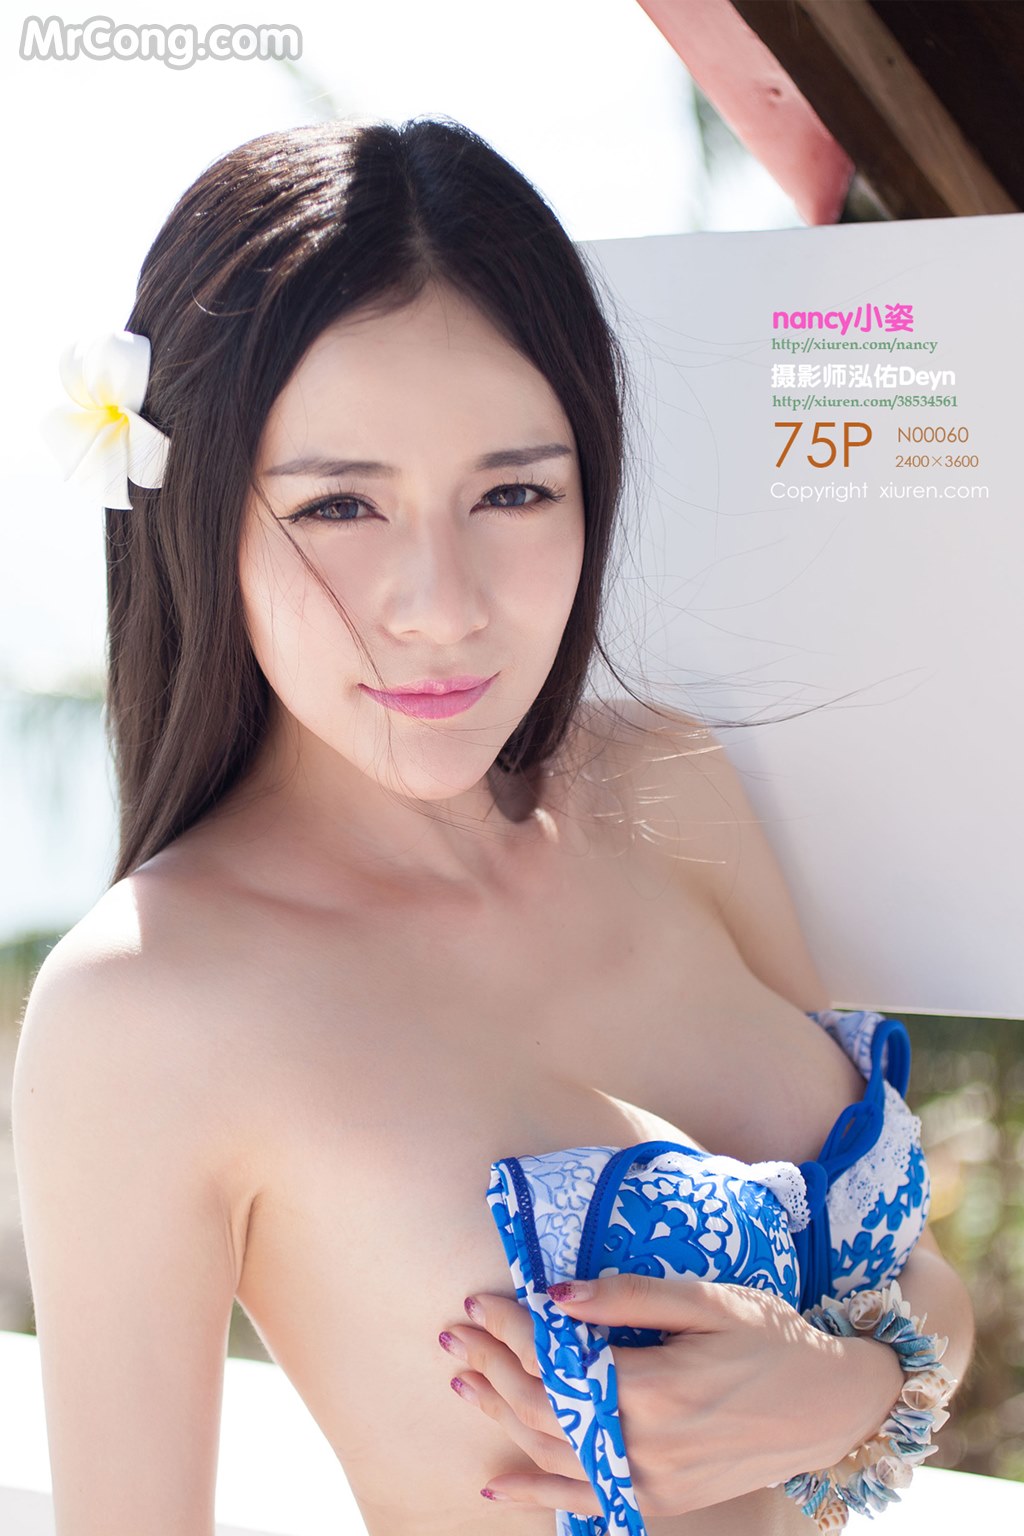 XIUREN No.059: Model Nancy (小 姿) (76 pictures)